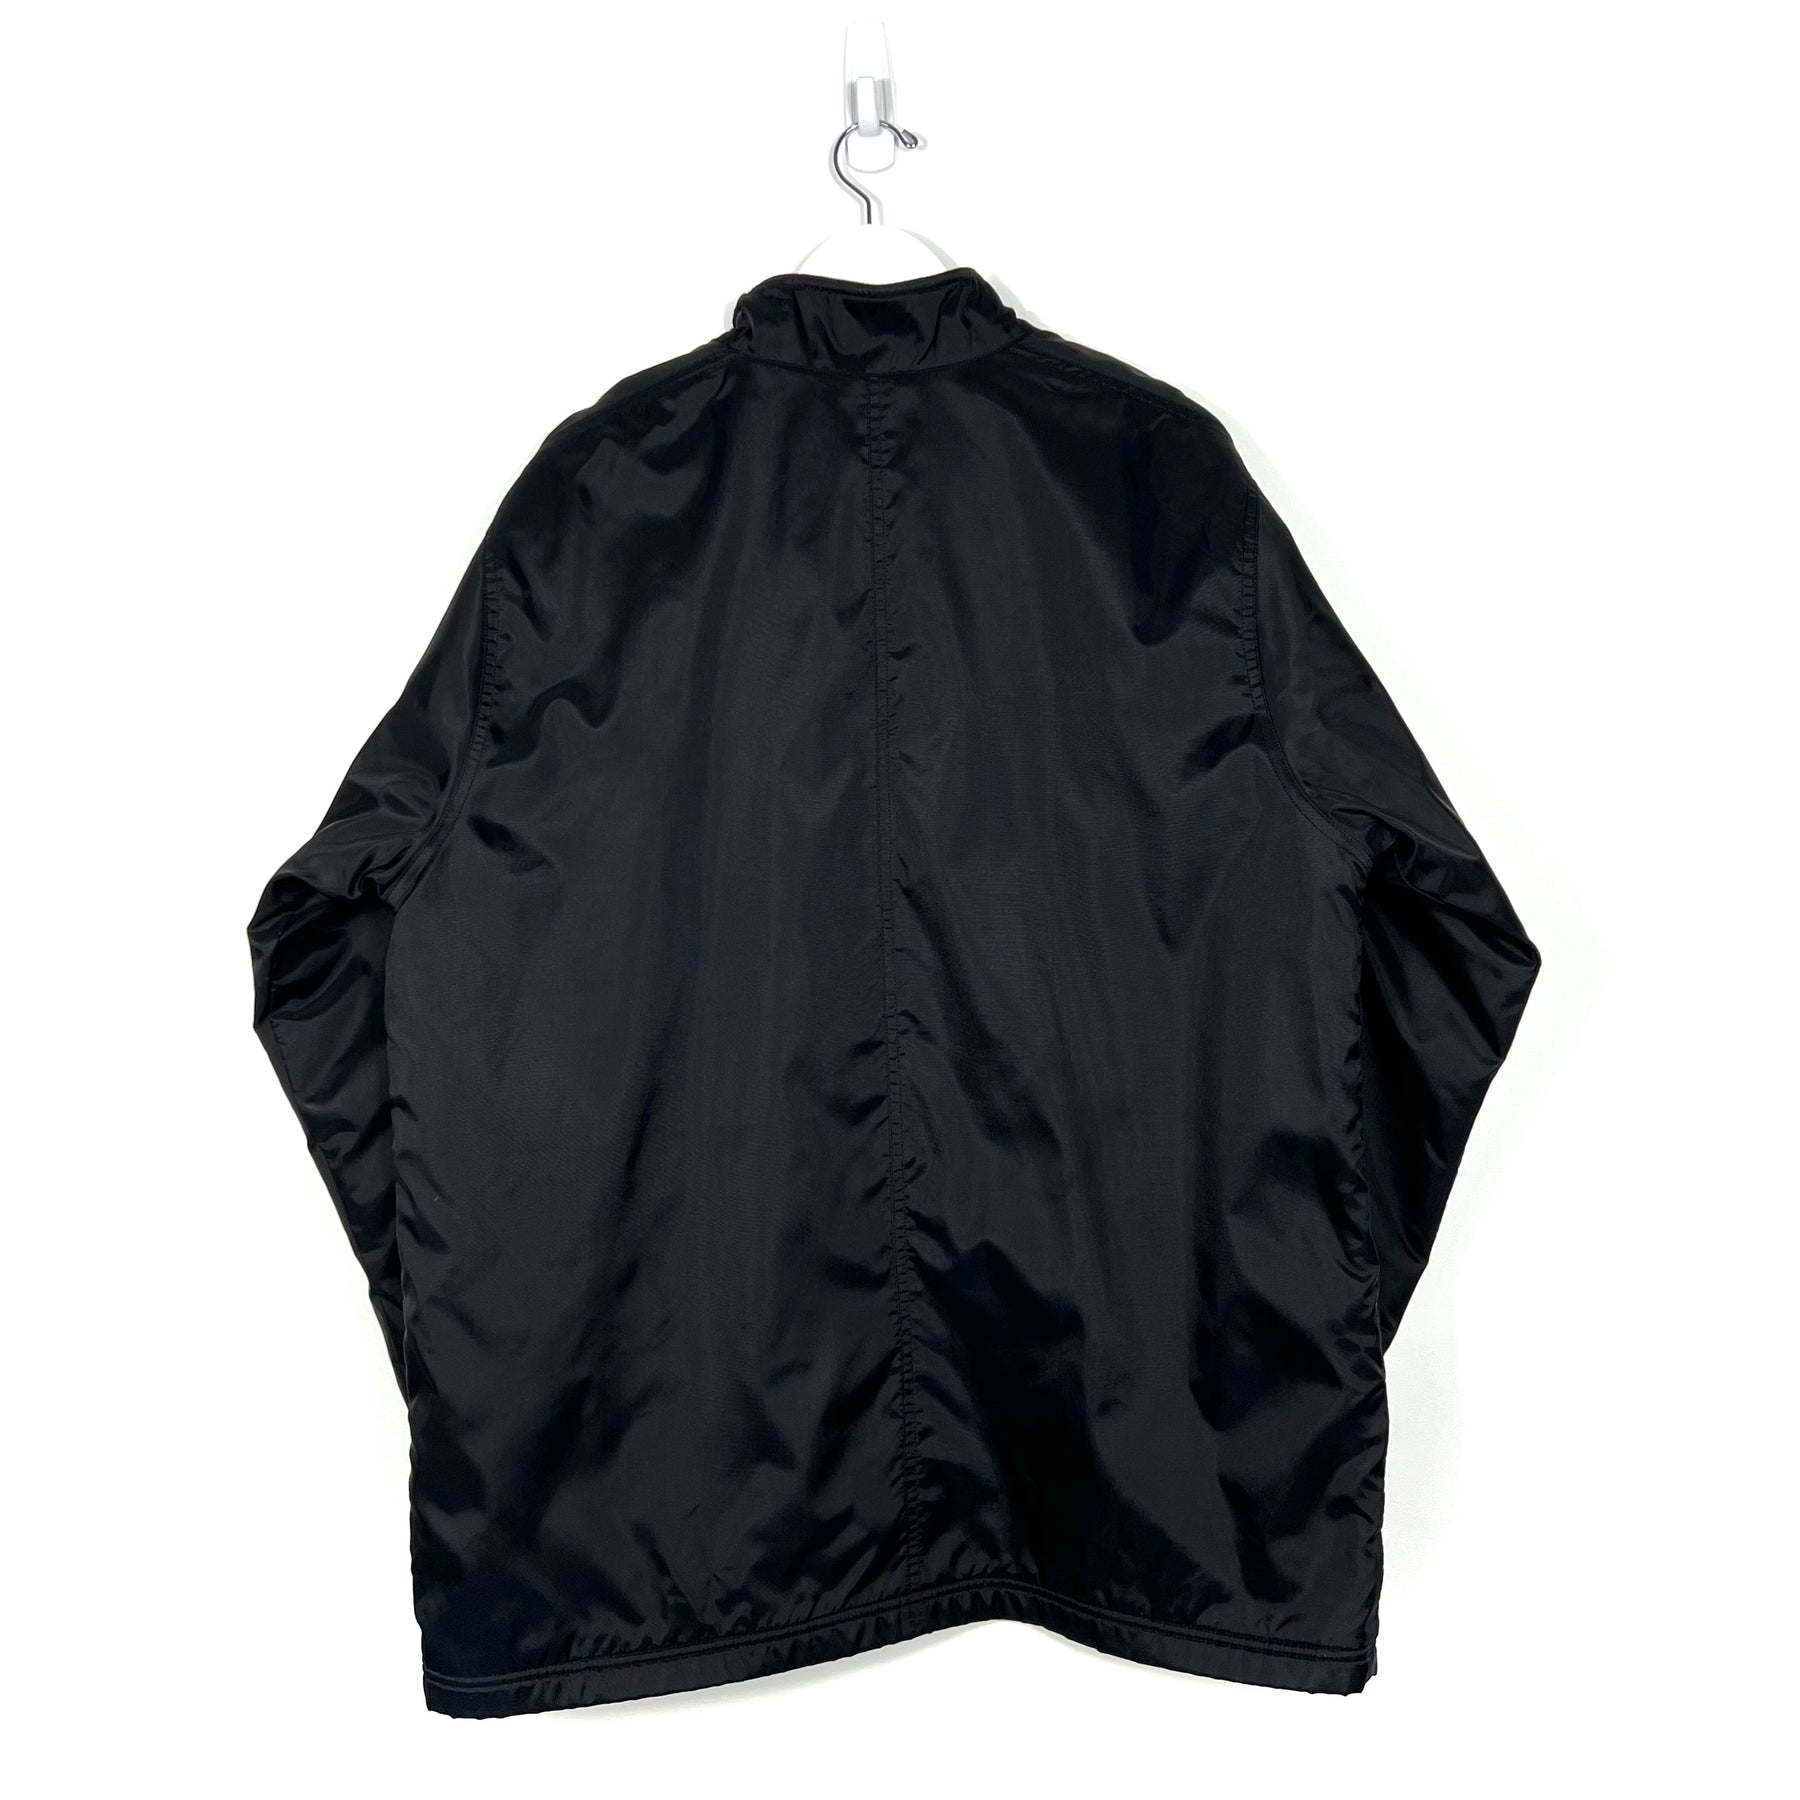 Vintage Nike Fleece-Lined Jacket - Men's Large